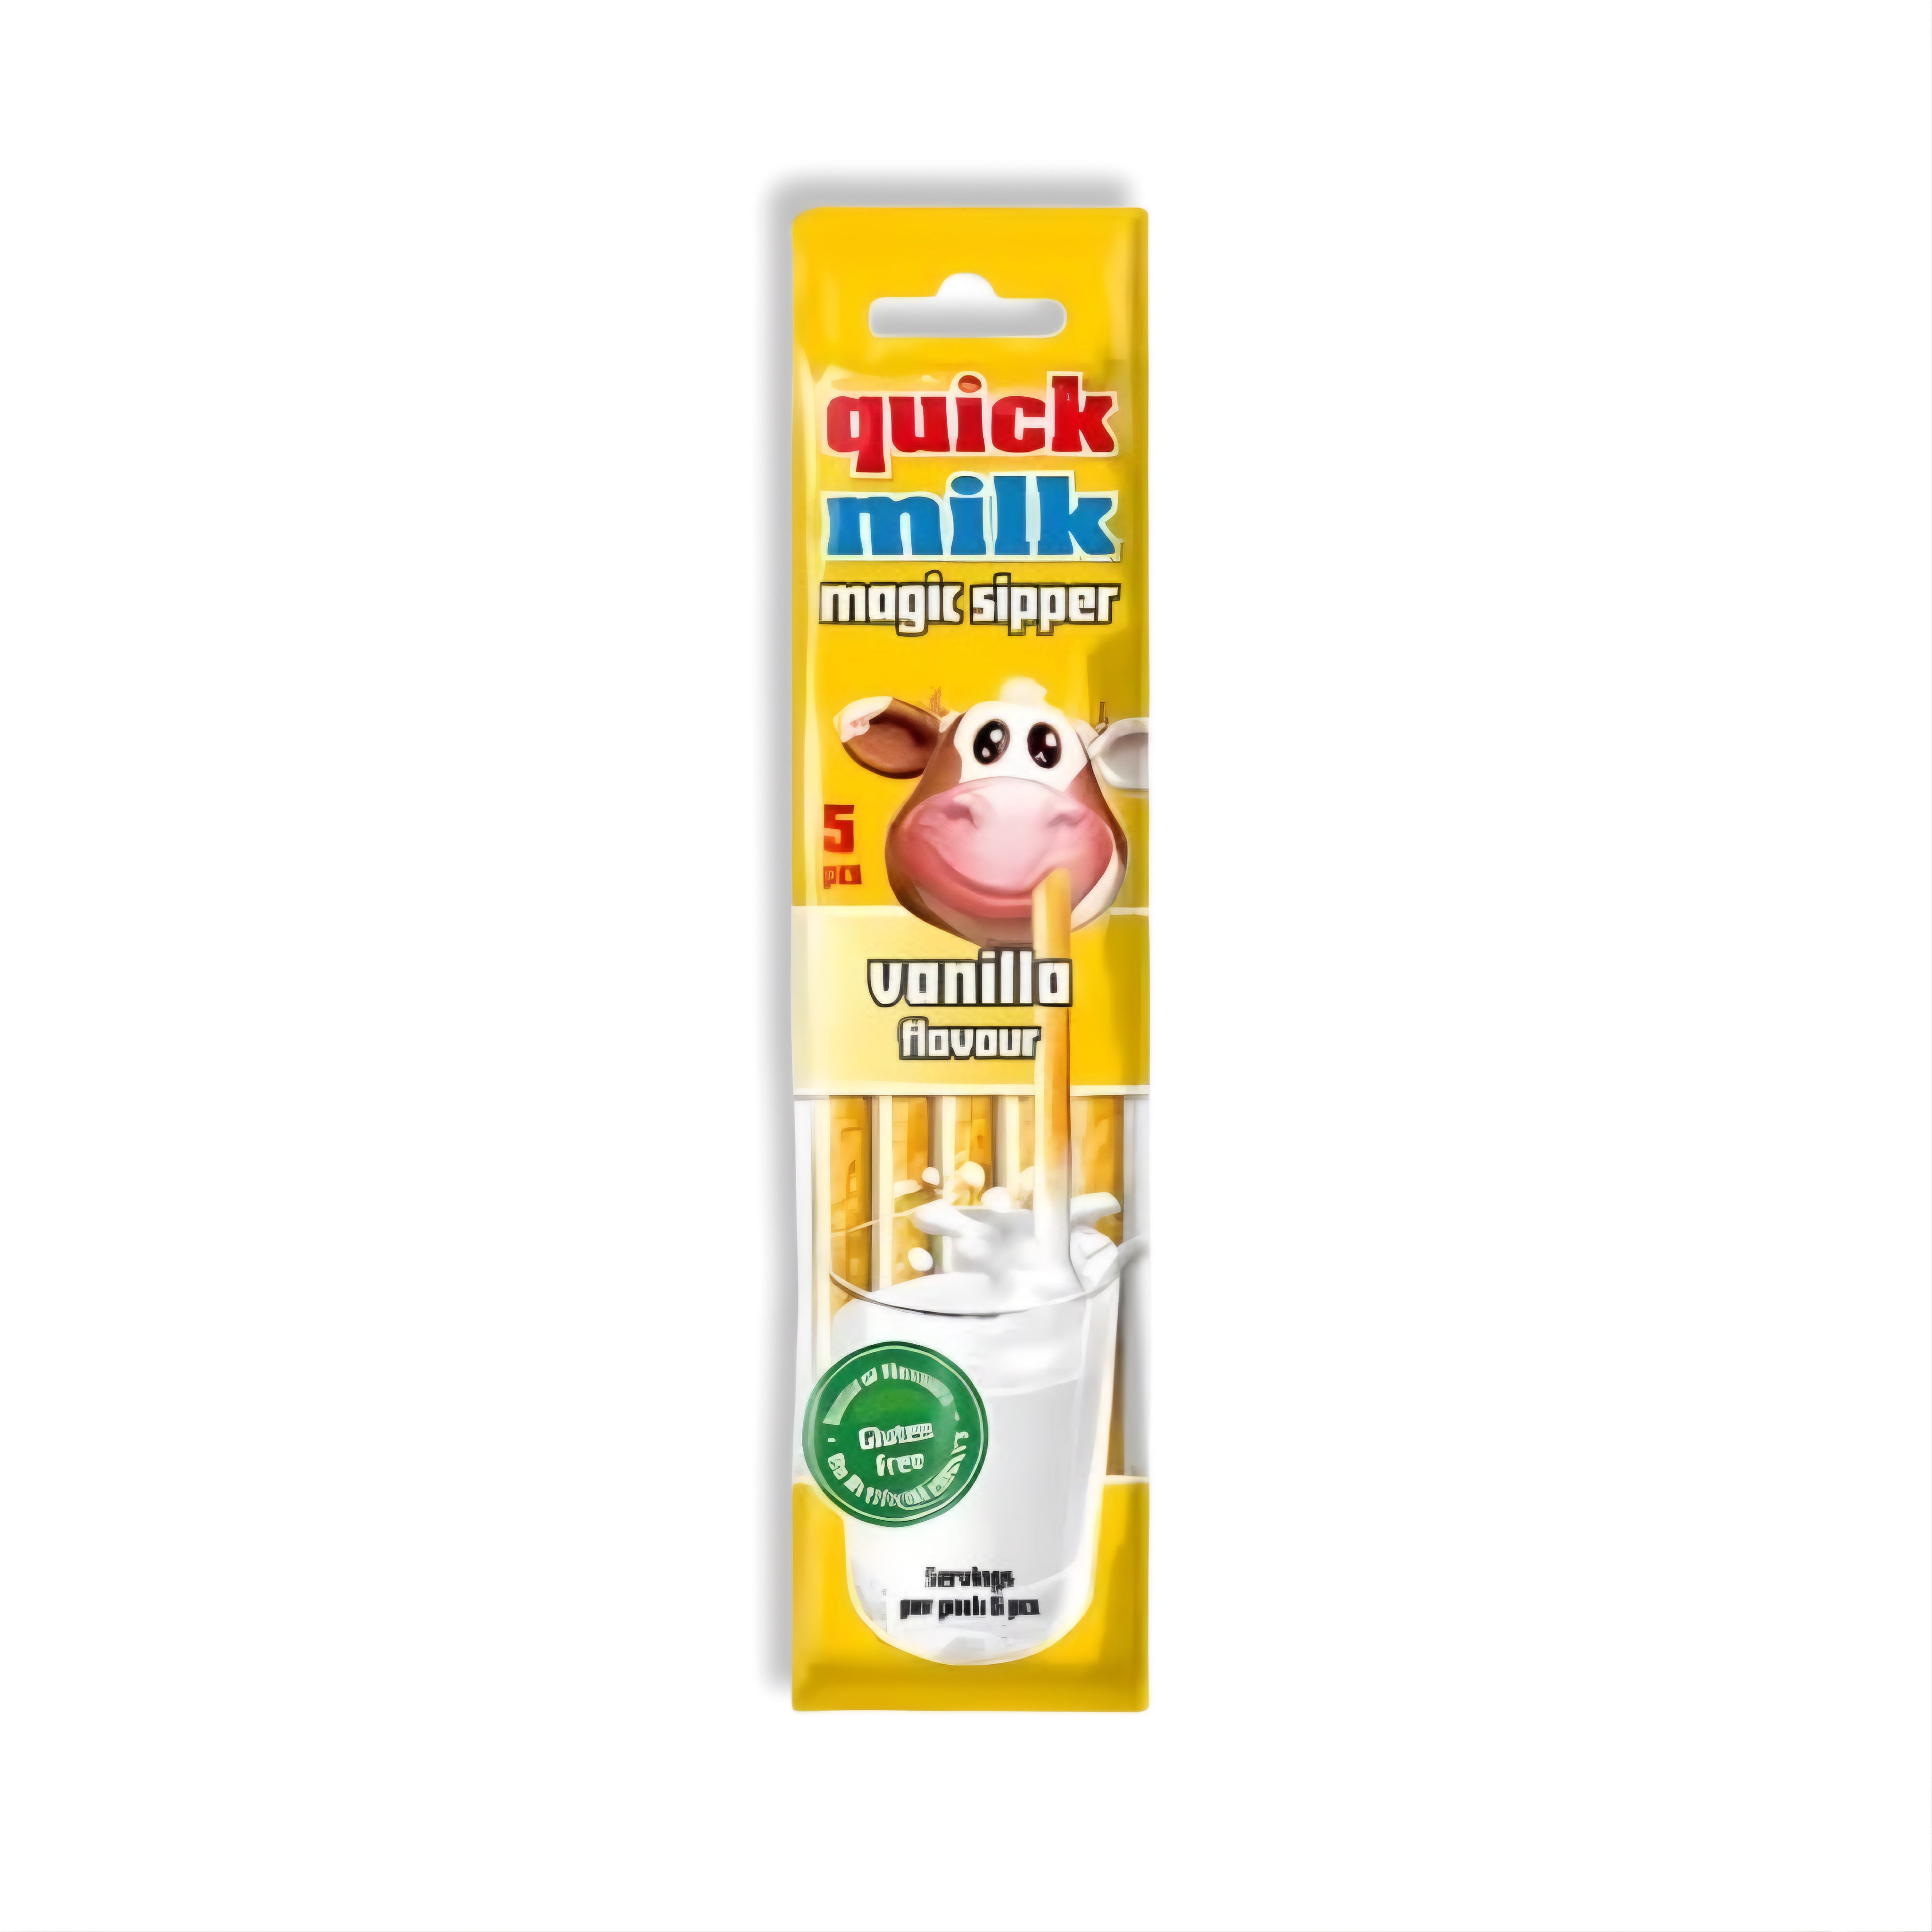 Quick Milk - Vanilla